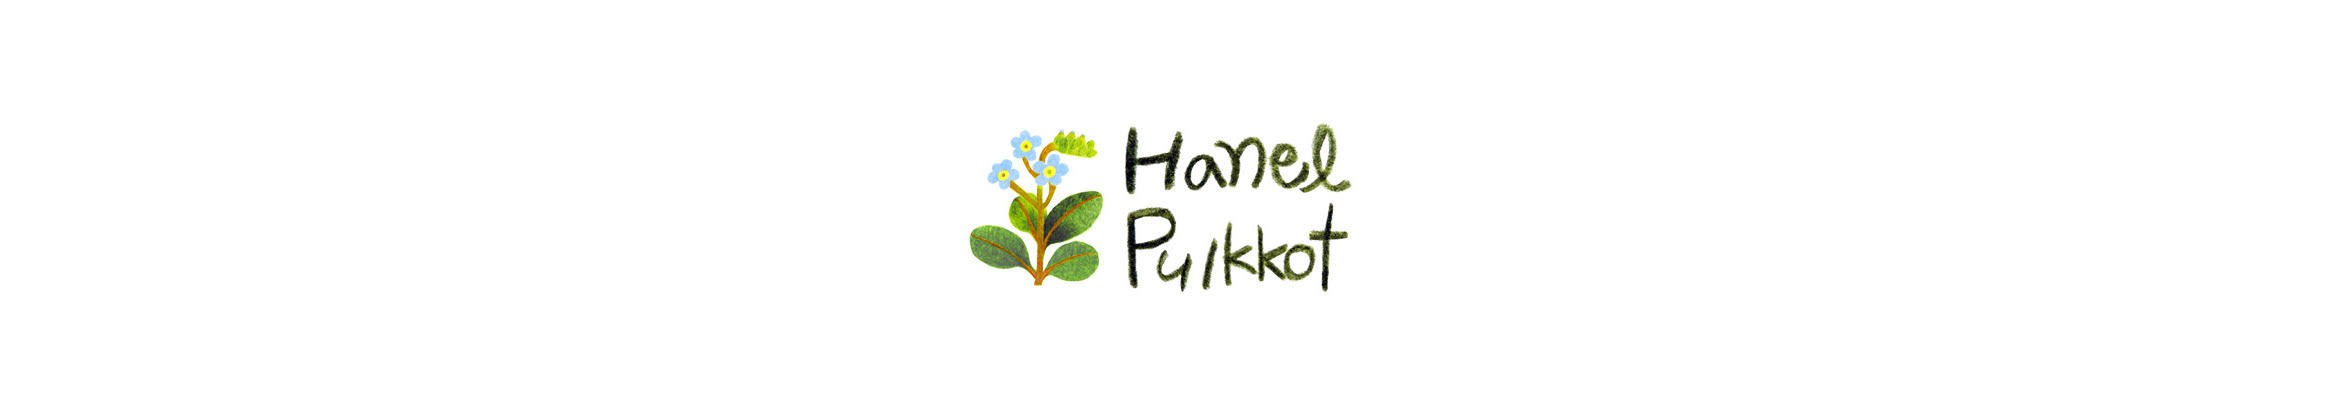 hanel pulkkot (jina)'s profile banner